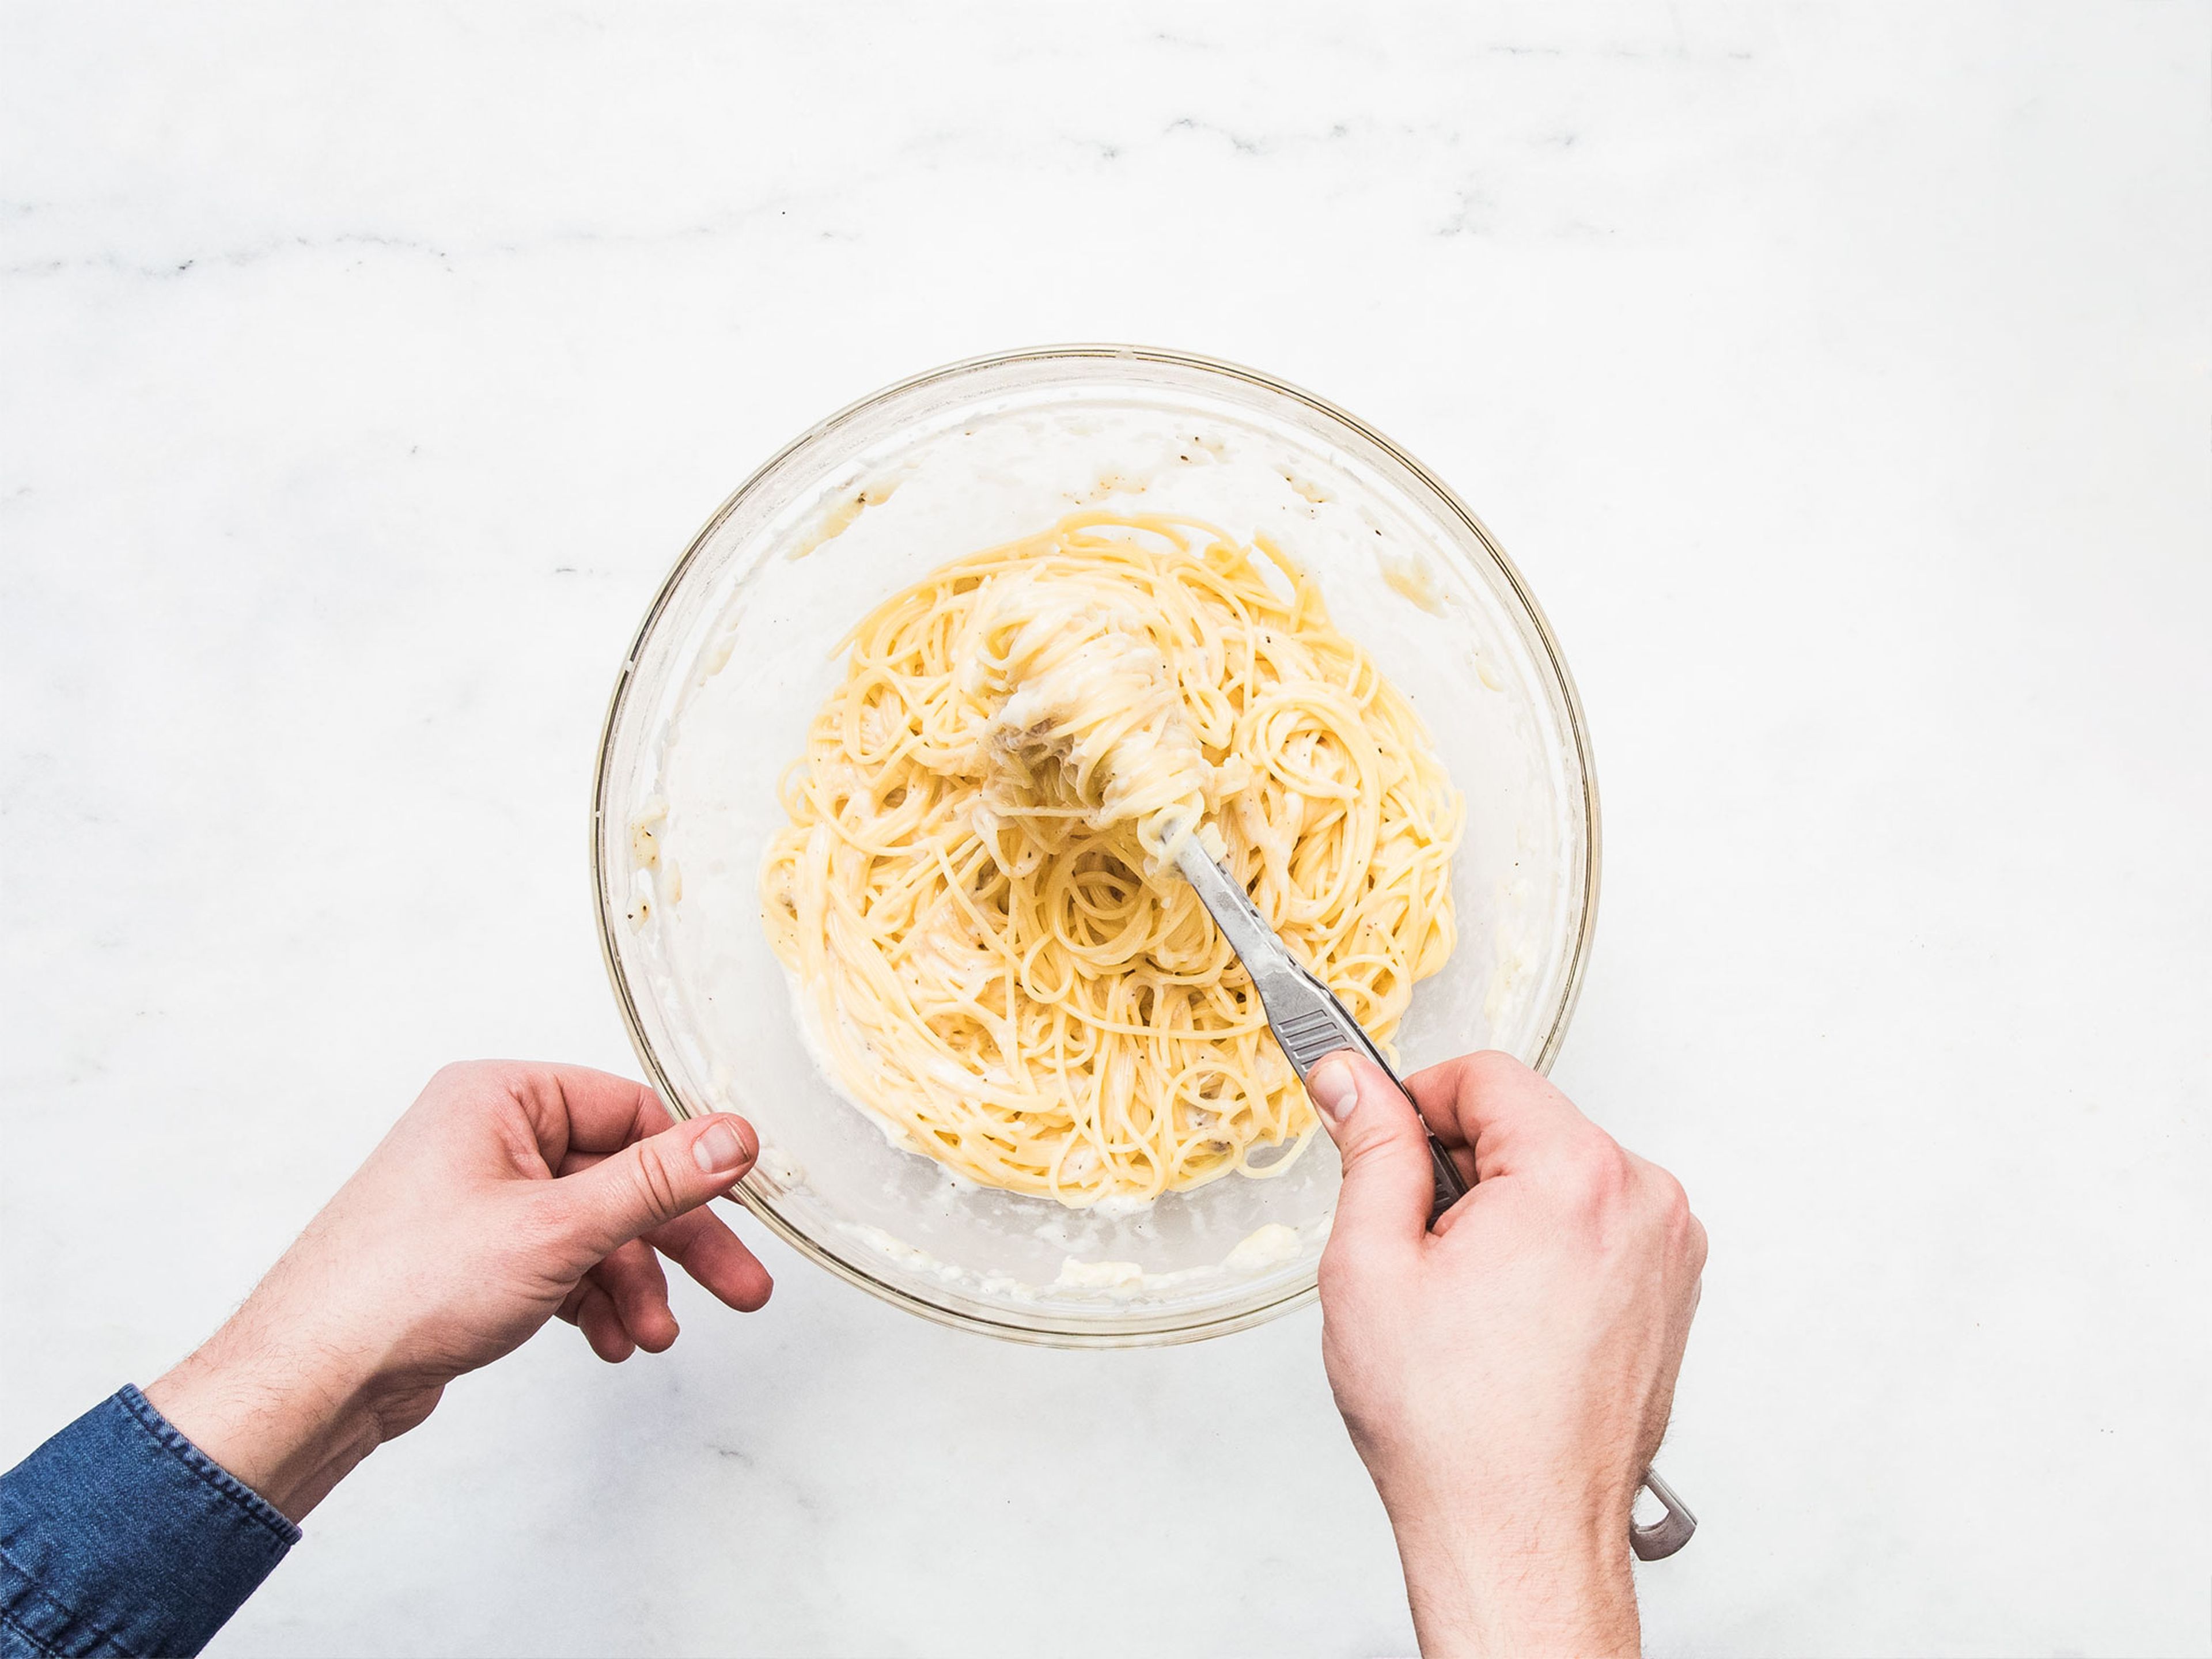 Spaghetti in einem großen Topf mit leicht gesalzenem, kochenden Wasser nach Packungsanweisung ca. 8 min. kochen, bzw. bis sie al dente sind. Spaghetti und etwas Nudelwasser in eine Schüssel mit Pecorinokäse und Pfeffer geben. Alles vermengen, bis der Käse geschmolzen und gleichmäßig unter den Nudeln verteilt ist. Wenn nötig, für mehr Cremigkeit noch etwas mehr Nudelwasser  hinzugeben. Mit Salz und Pfeffer würzen. Sofort servieren und genießen!